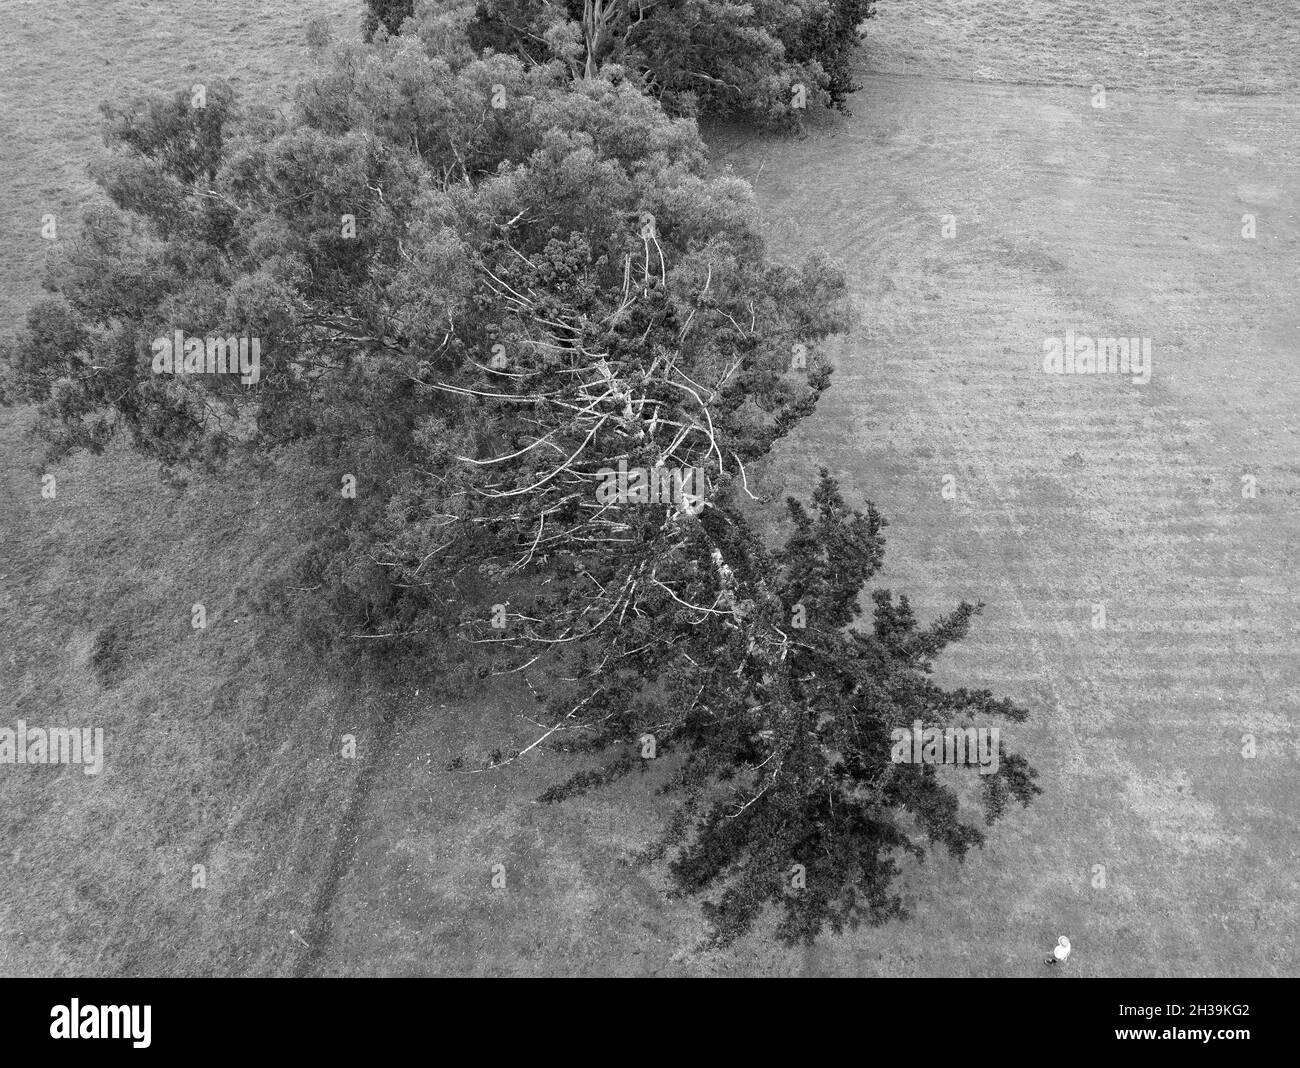 Vista dall'alto in bianco e nero di un albero piegato dall'età e dal vento in un campo di campagna, con una figura inidentificabile in basso a destra Foto Stock